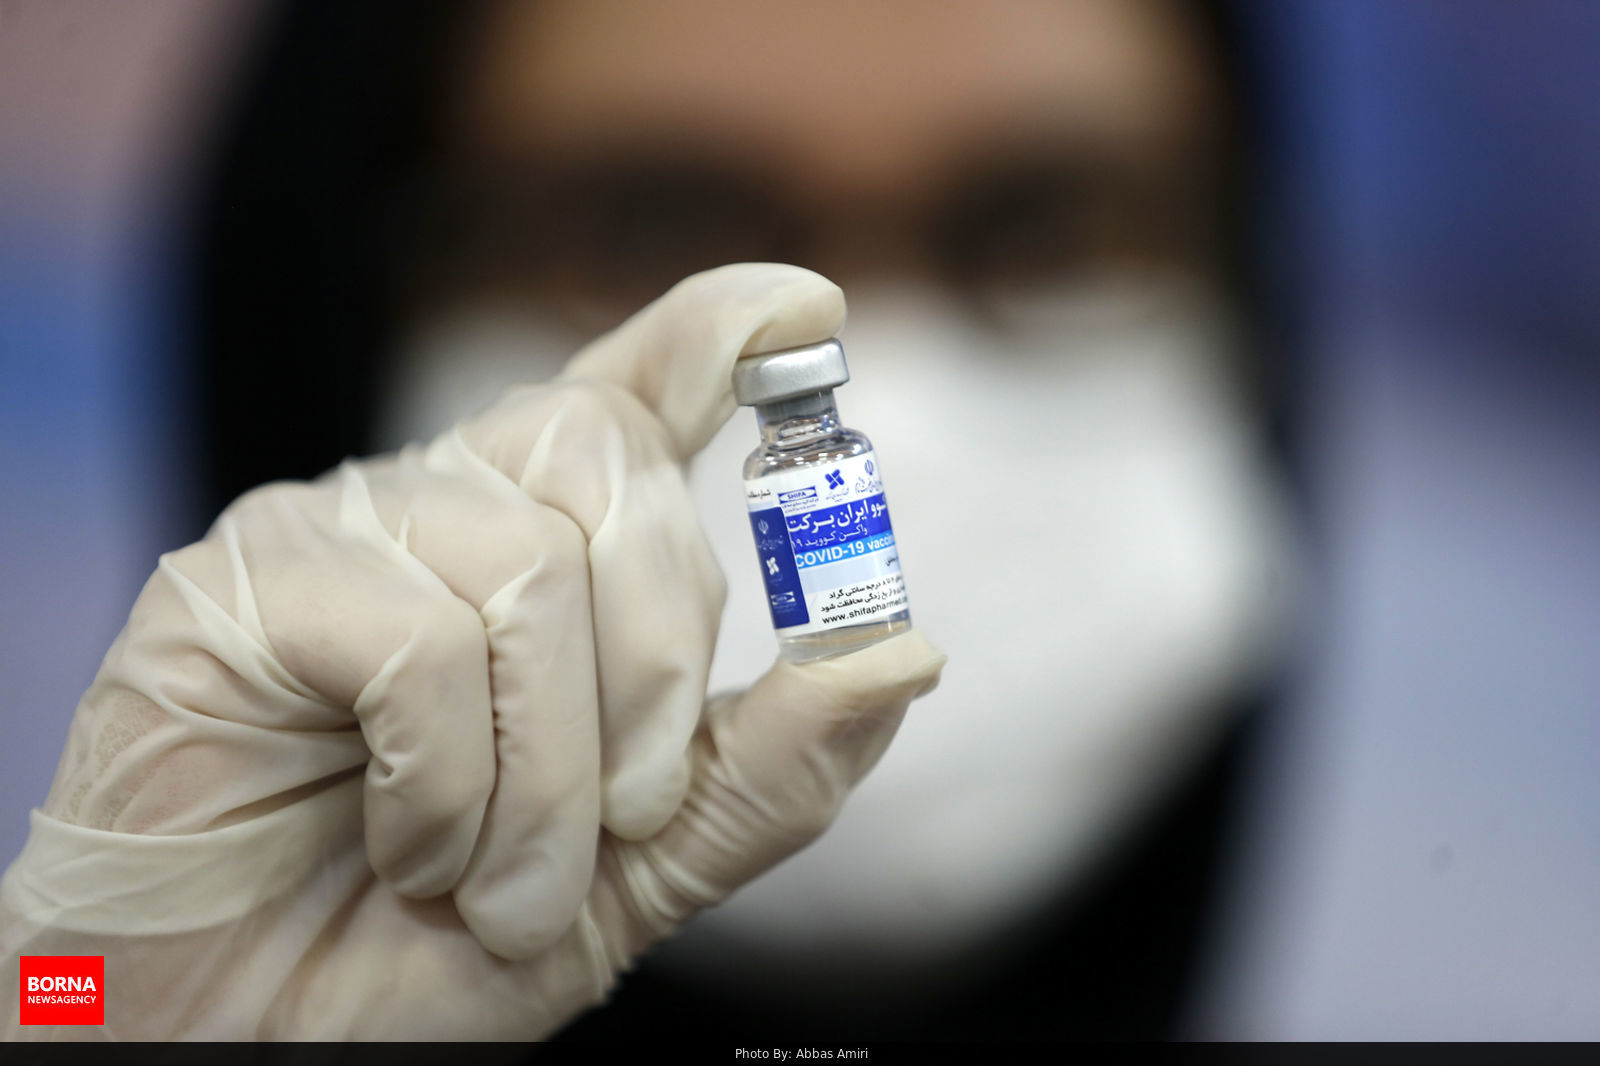 تحویل محموله ی واکسن برکت هر دو روز یکبار به وزارت بهداشت/ واکسن پاستووک  مهرماه وارد سبد واکسیناسیون کشوری می شود/ راه اندازی خط تولید واکسن  اسپوتنیک ایرانی با مجوز روسیه انجام